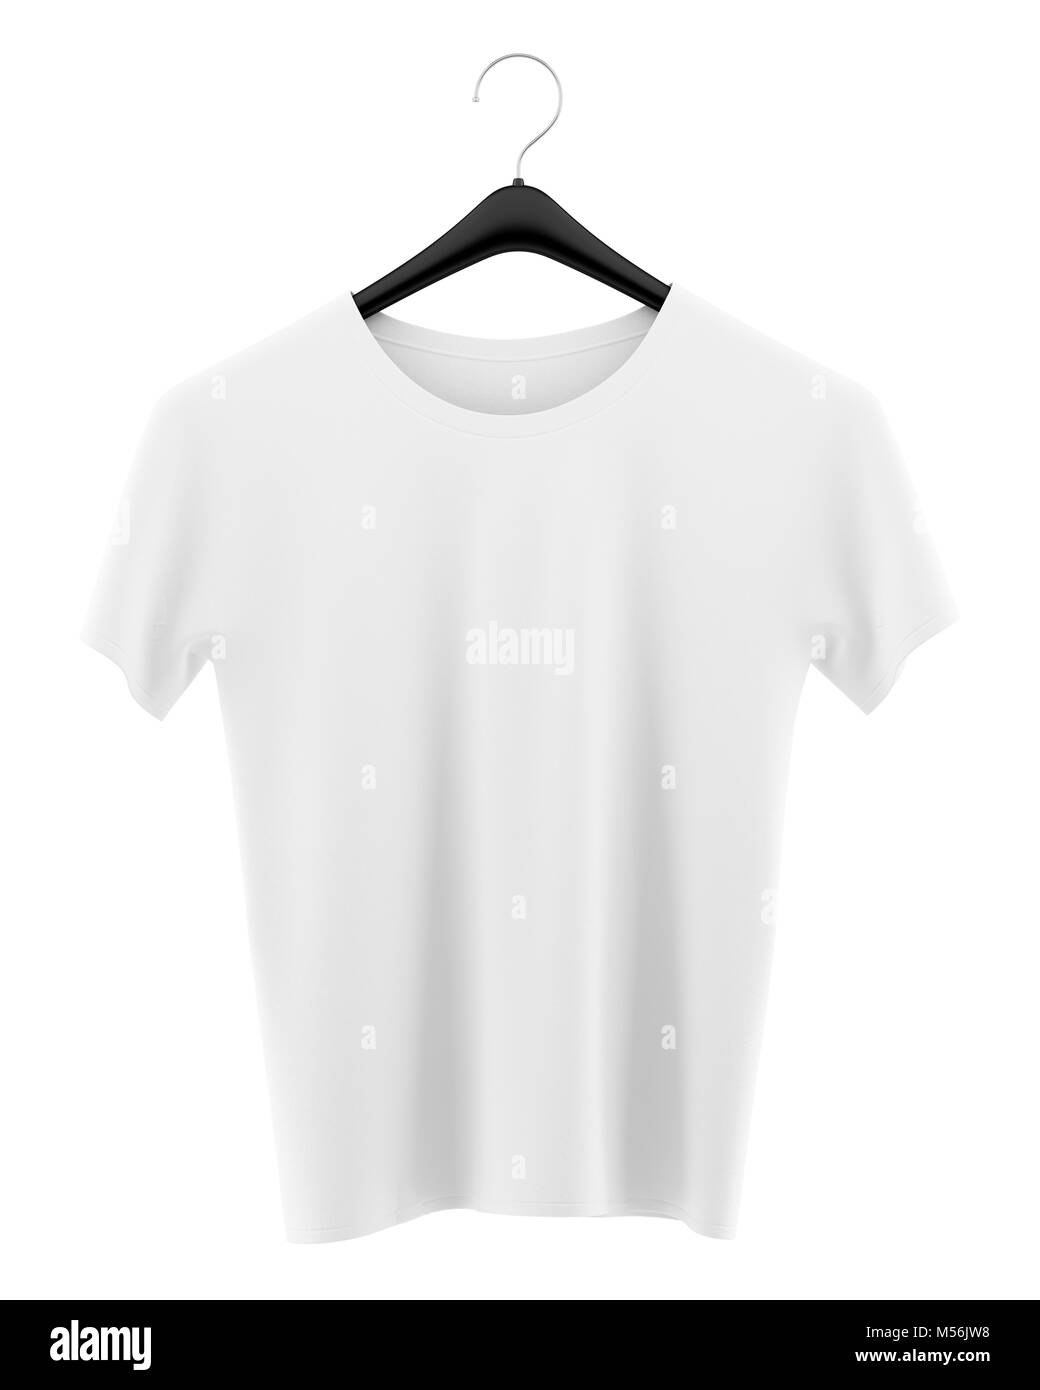 t-shirt on clothing hanger isolated on white background Stock Photo